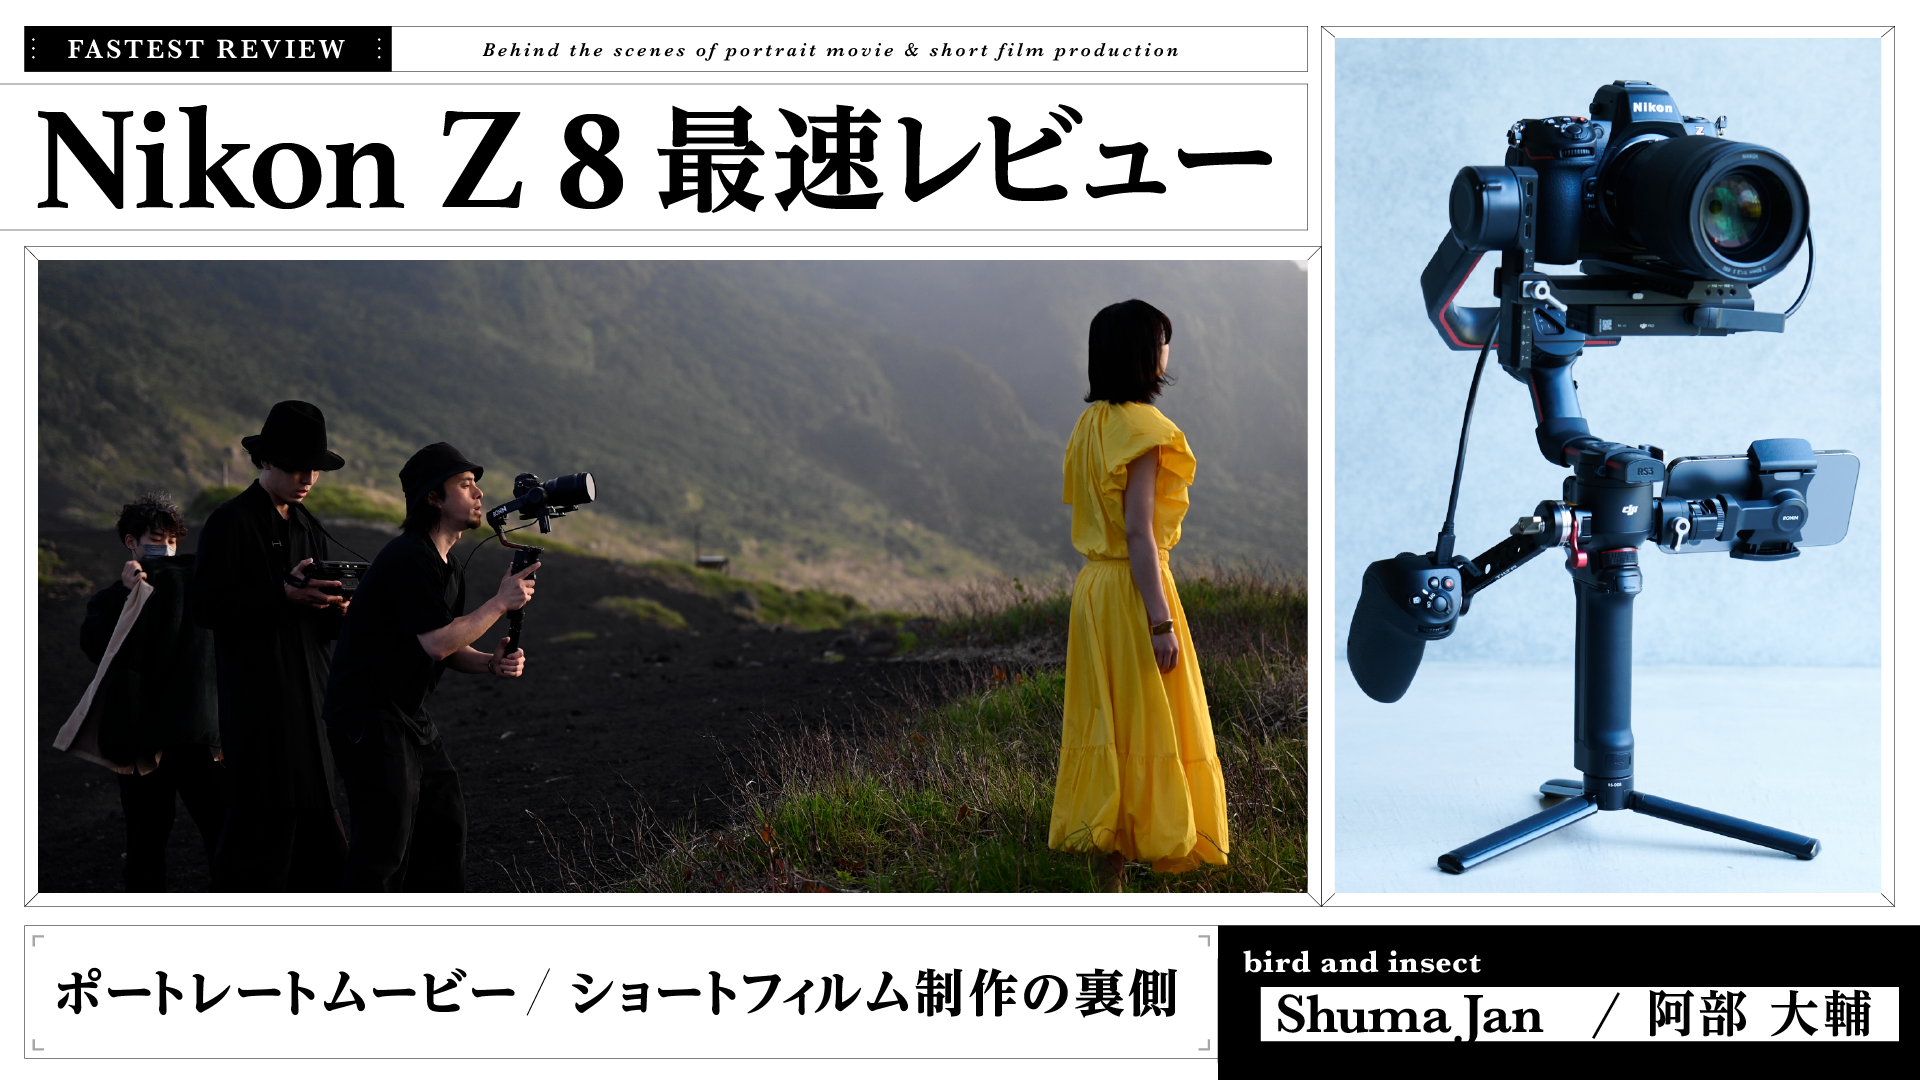 Nikon Z 8 最速レビュー ポートレートムービー / ショートフィルム制作の裏側